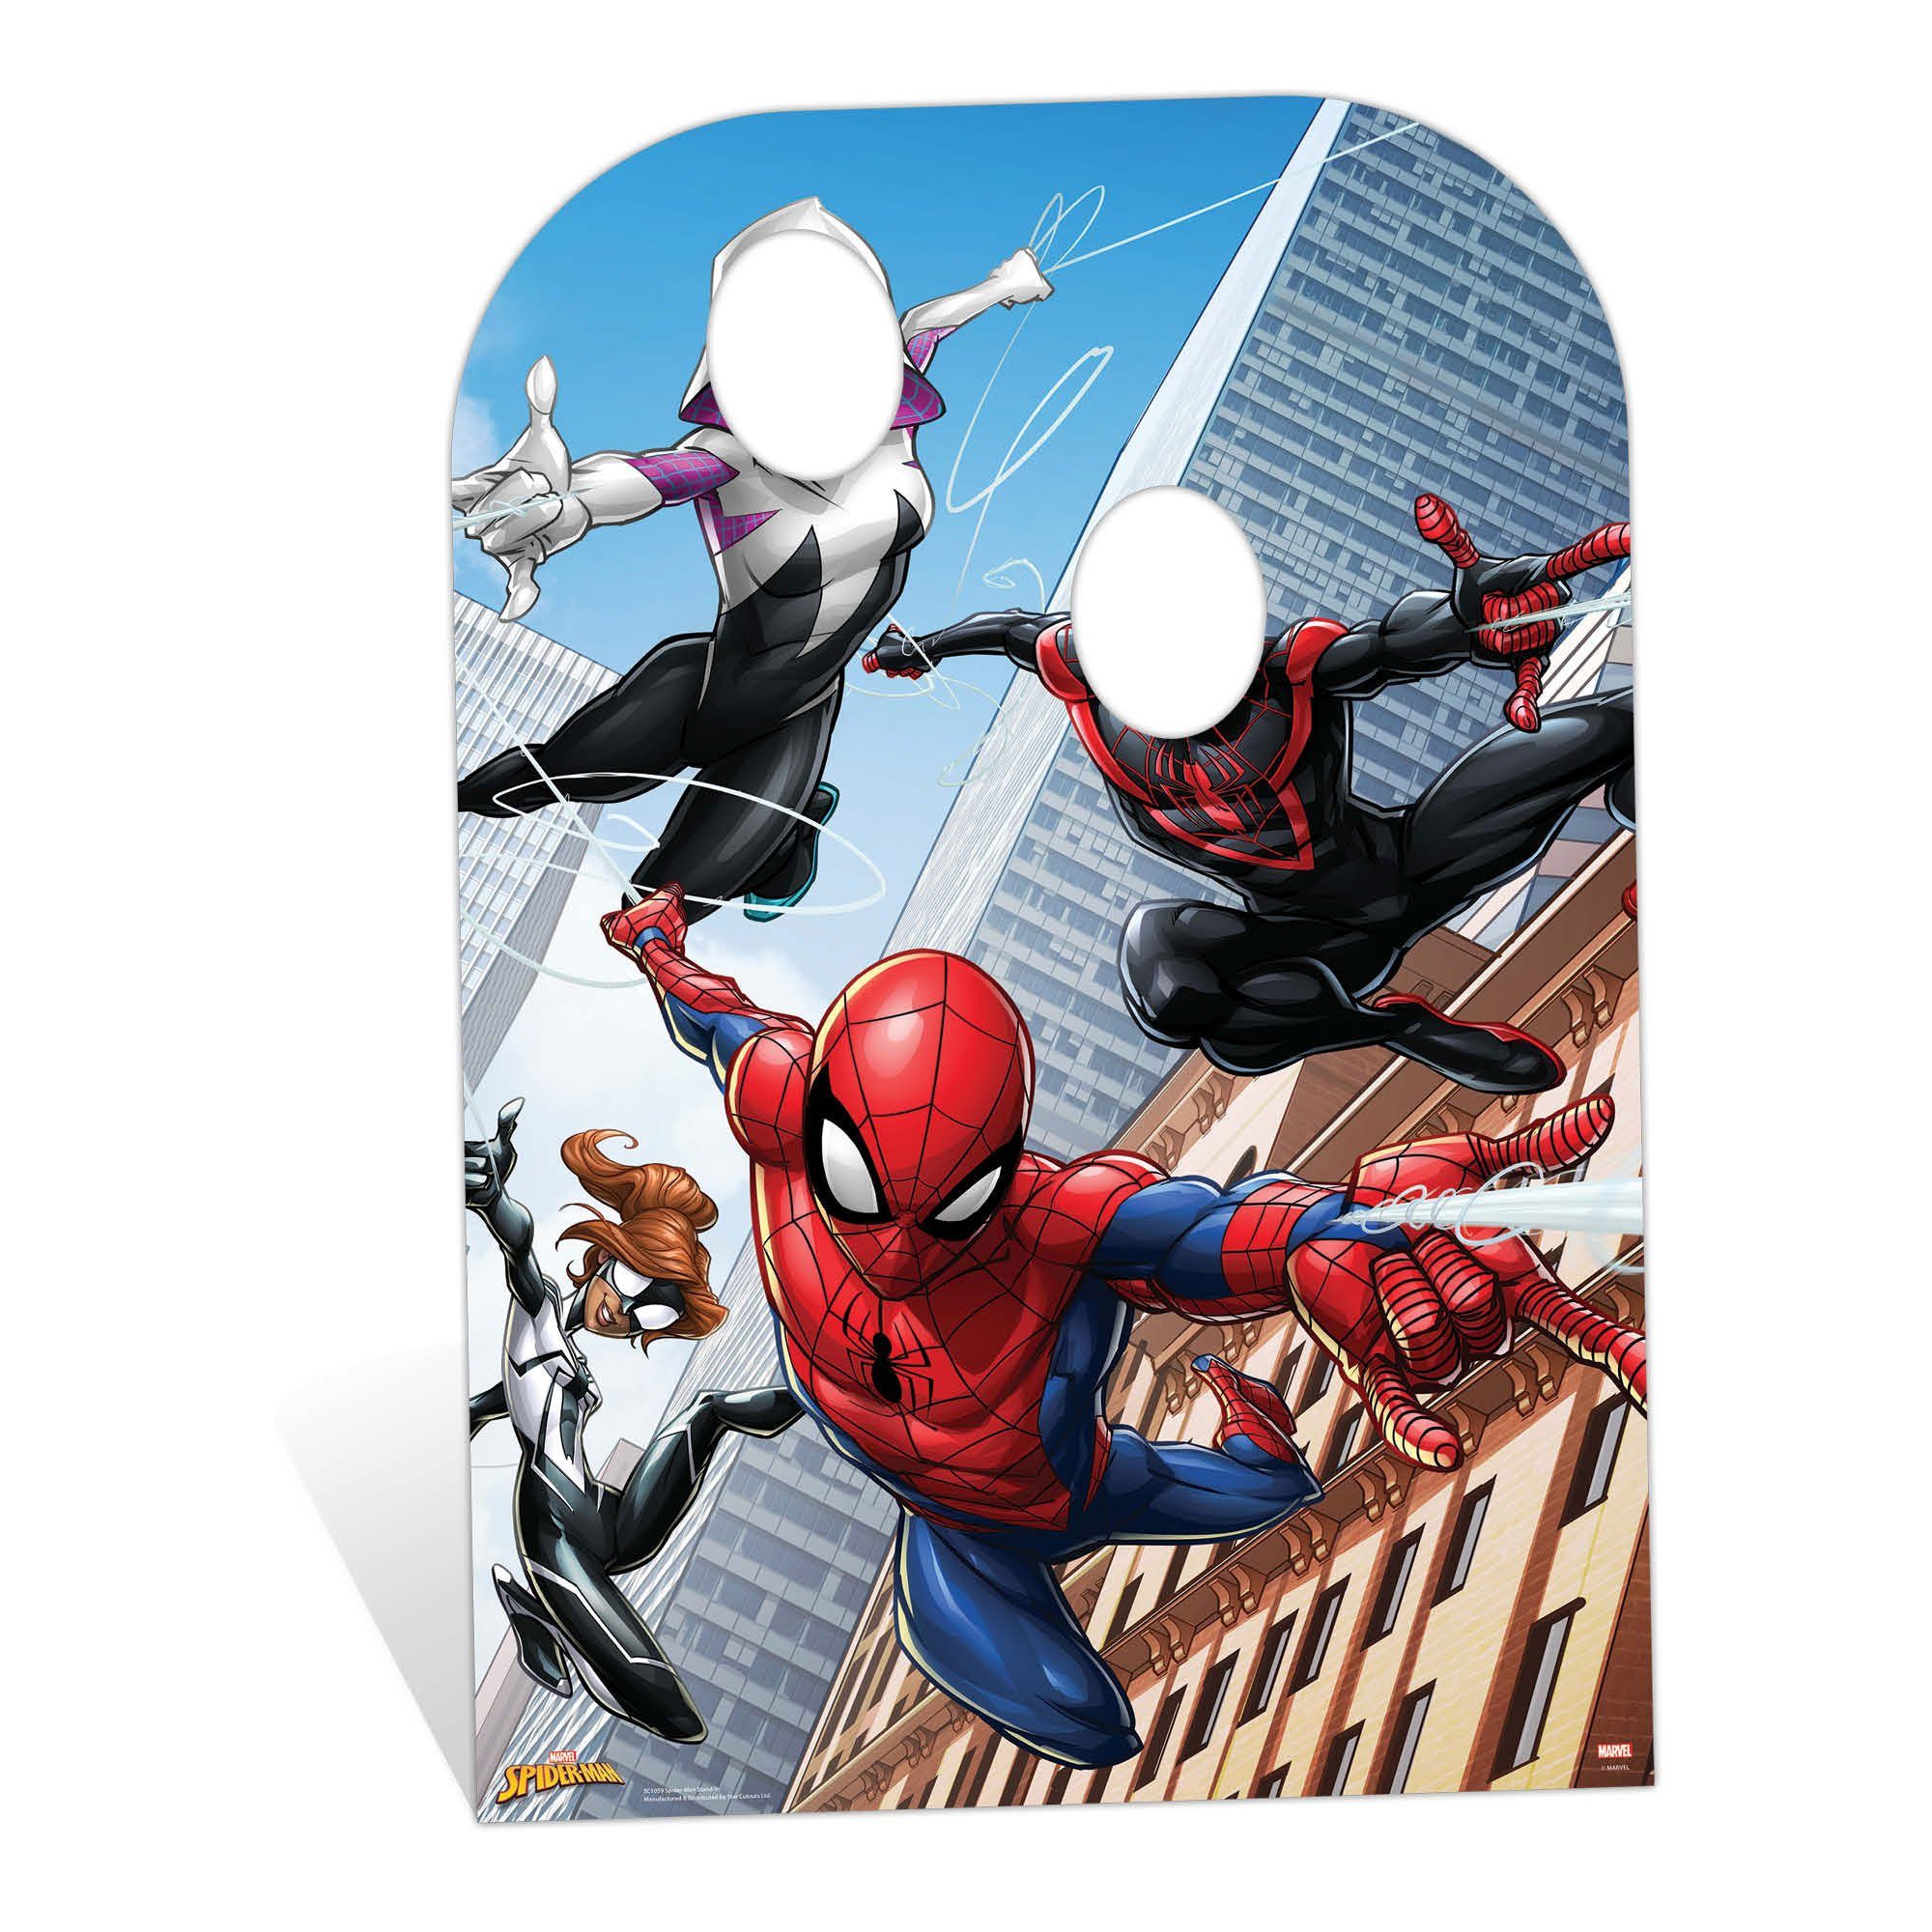 In empireposter - cm Web Warriors - Pappaufsteller Stand Standy 95x136 Dekofigur Spider-Man